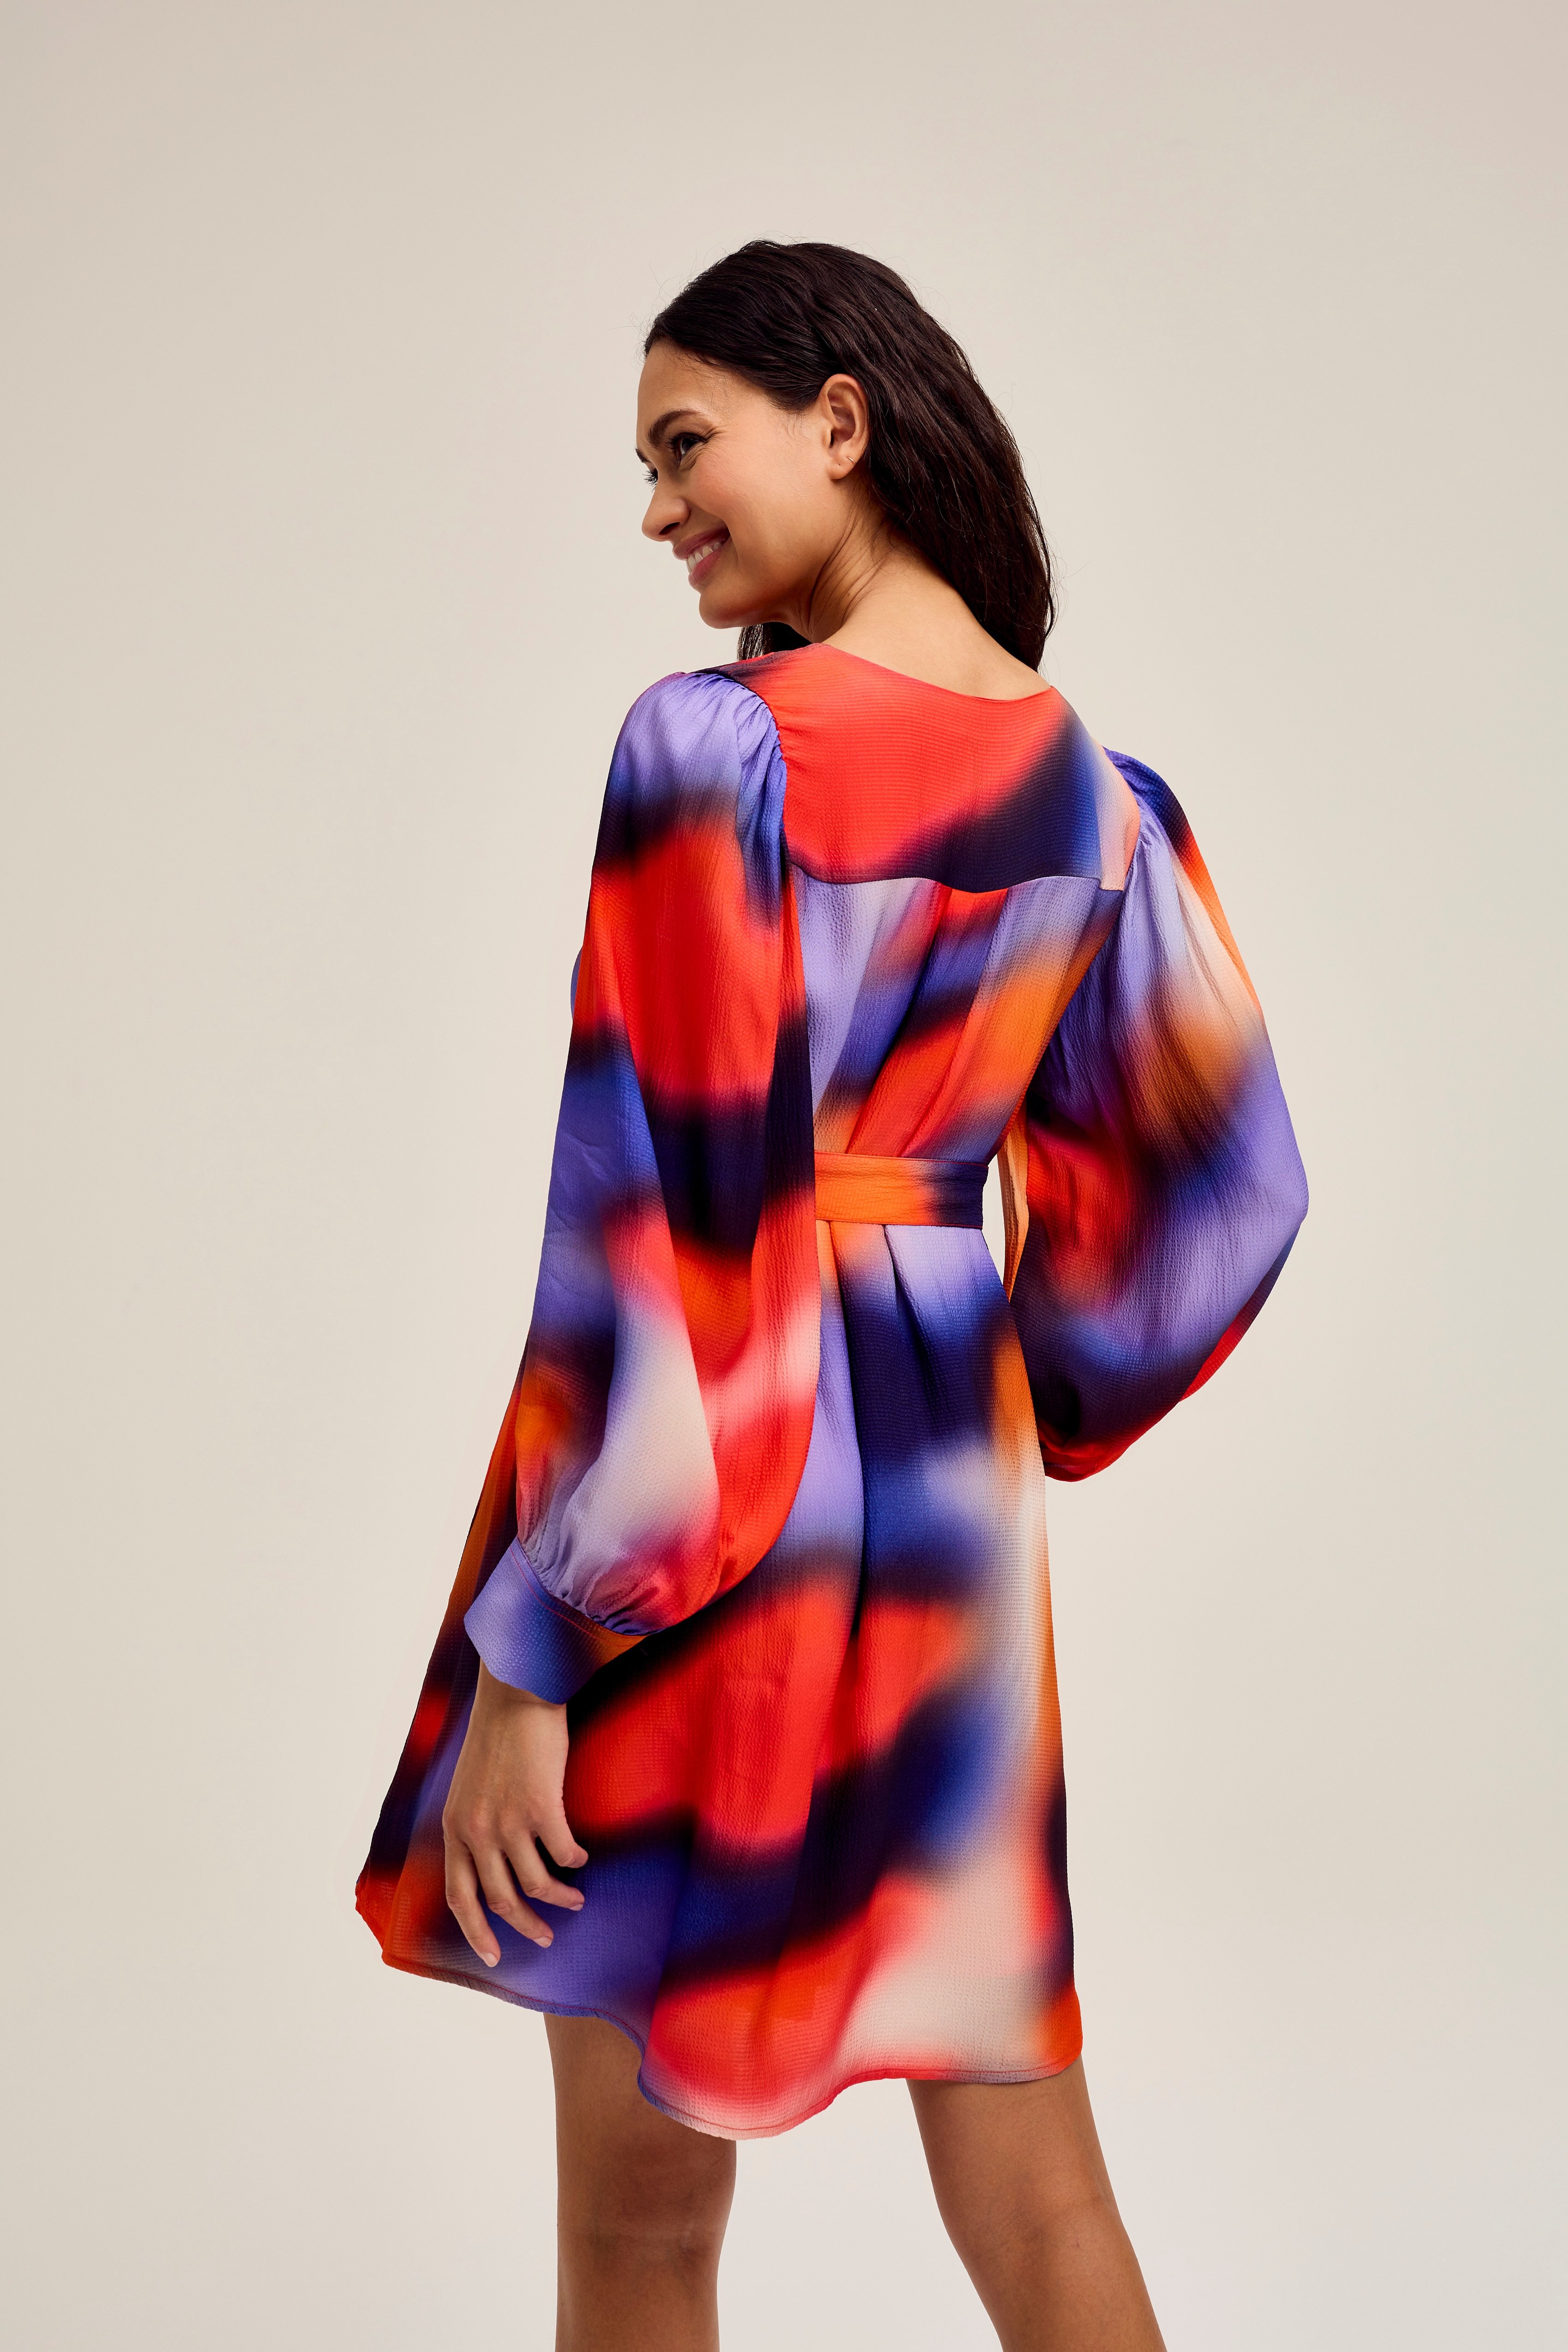 CKS Dames - DAISYS - robe courte - multicolore